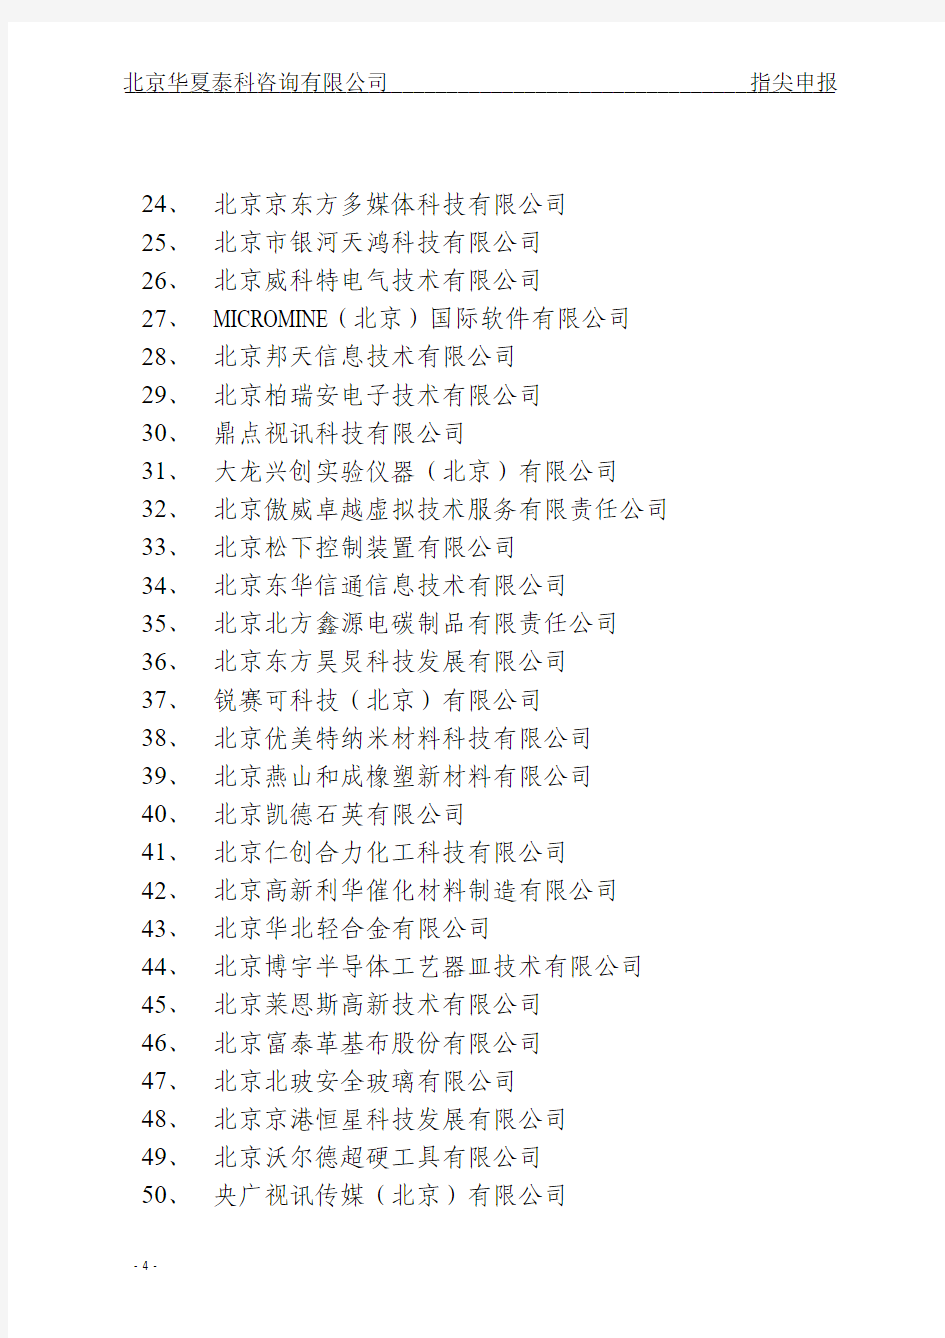 2014年度北京市第一批高新技术企业公示名单